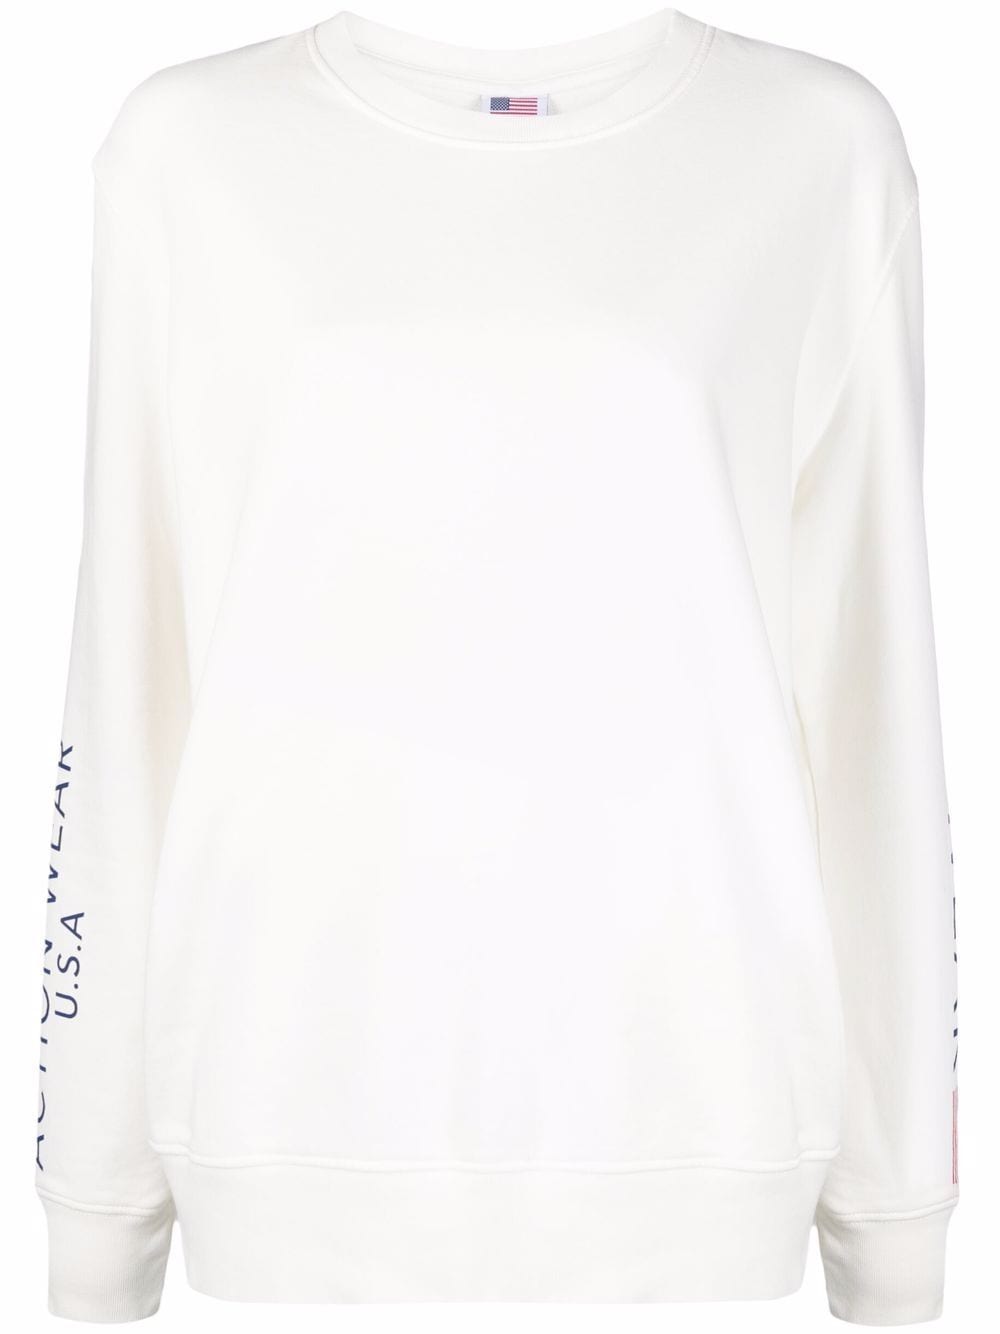 Autry Action Wear print sweatshirt - White von Autry